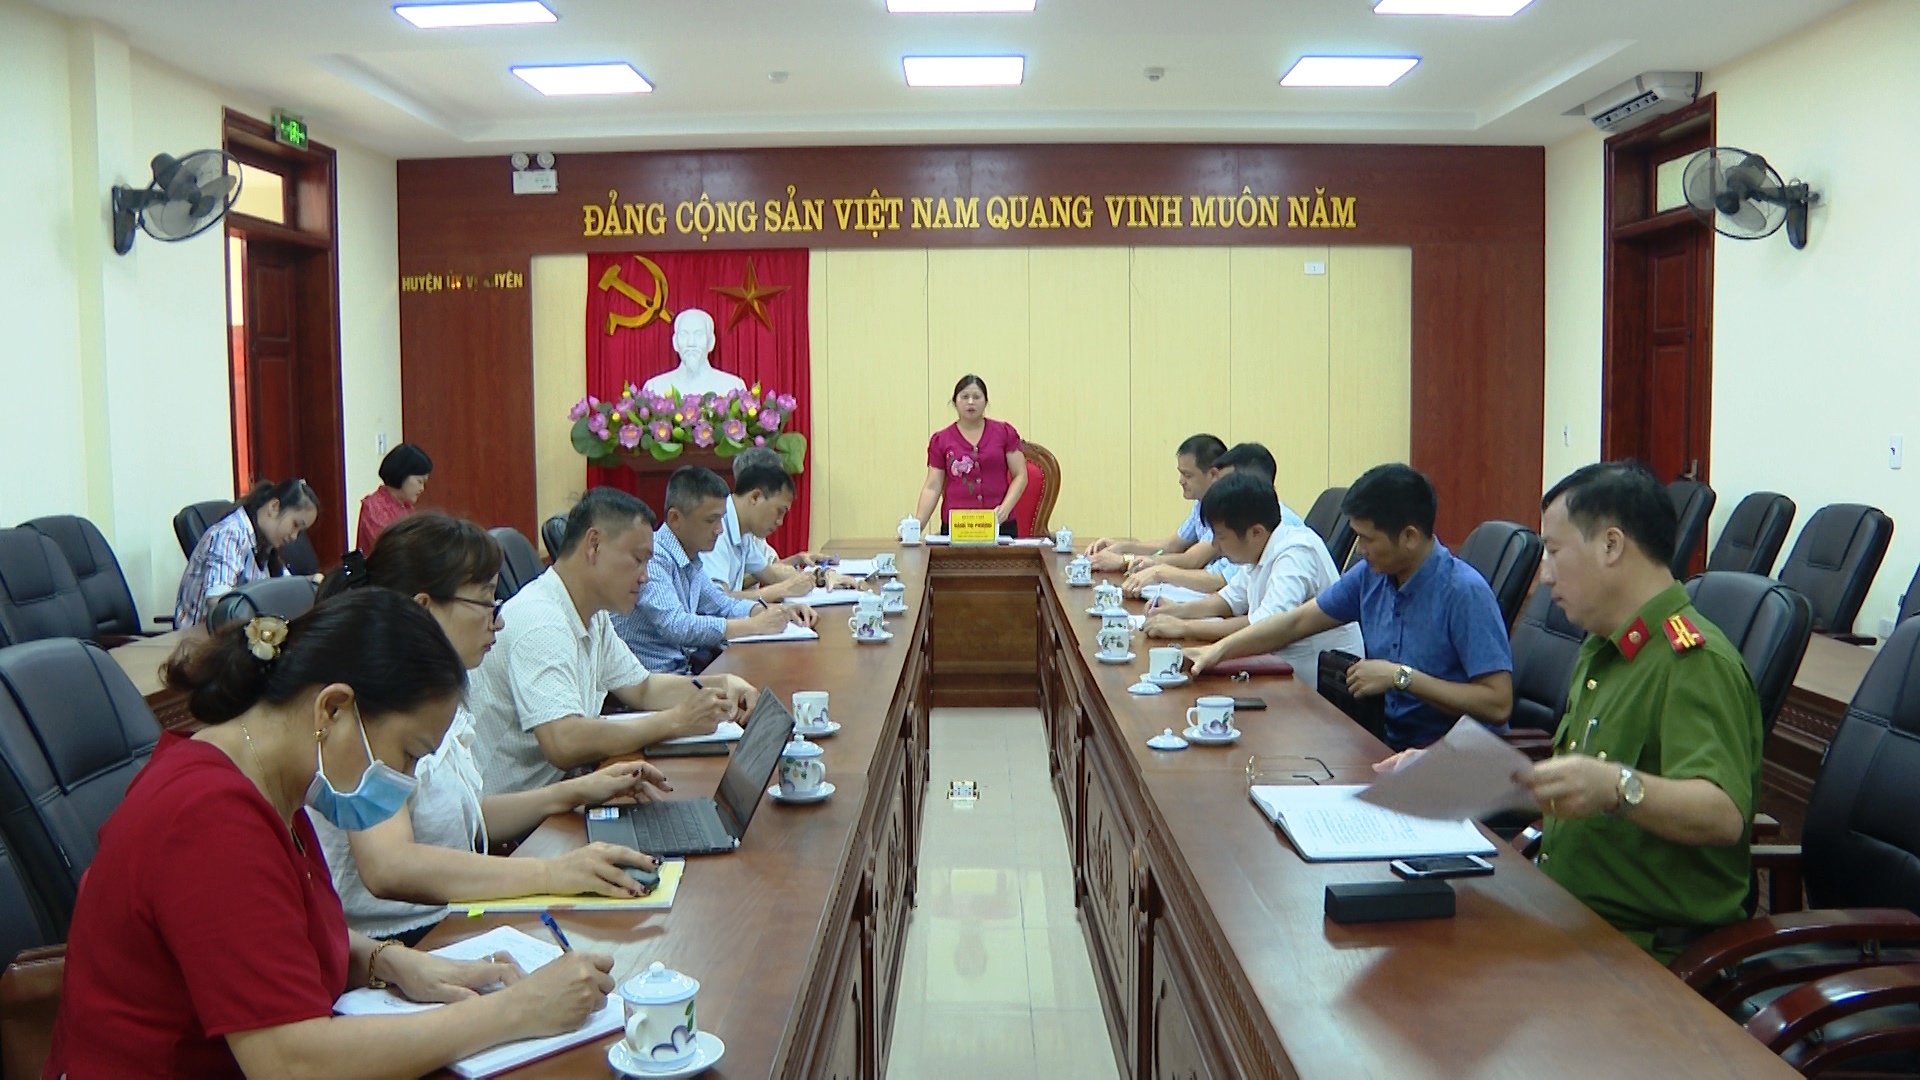 Vị Xuyên họp chuẩn bị tổ chức Đại hội TDTT lần thứ VII và Ngày hội Văn hóa các dân tộc huyện Vị Xuyên năm 2022